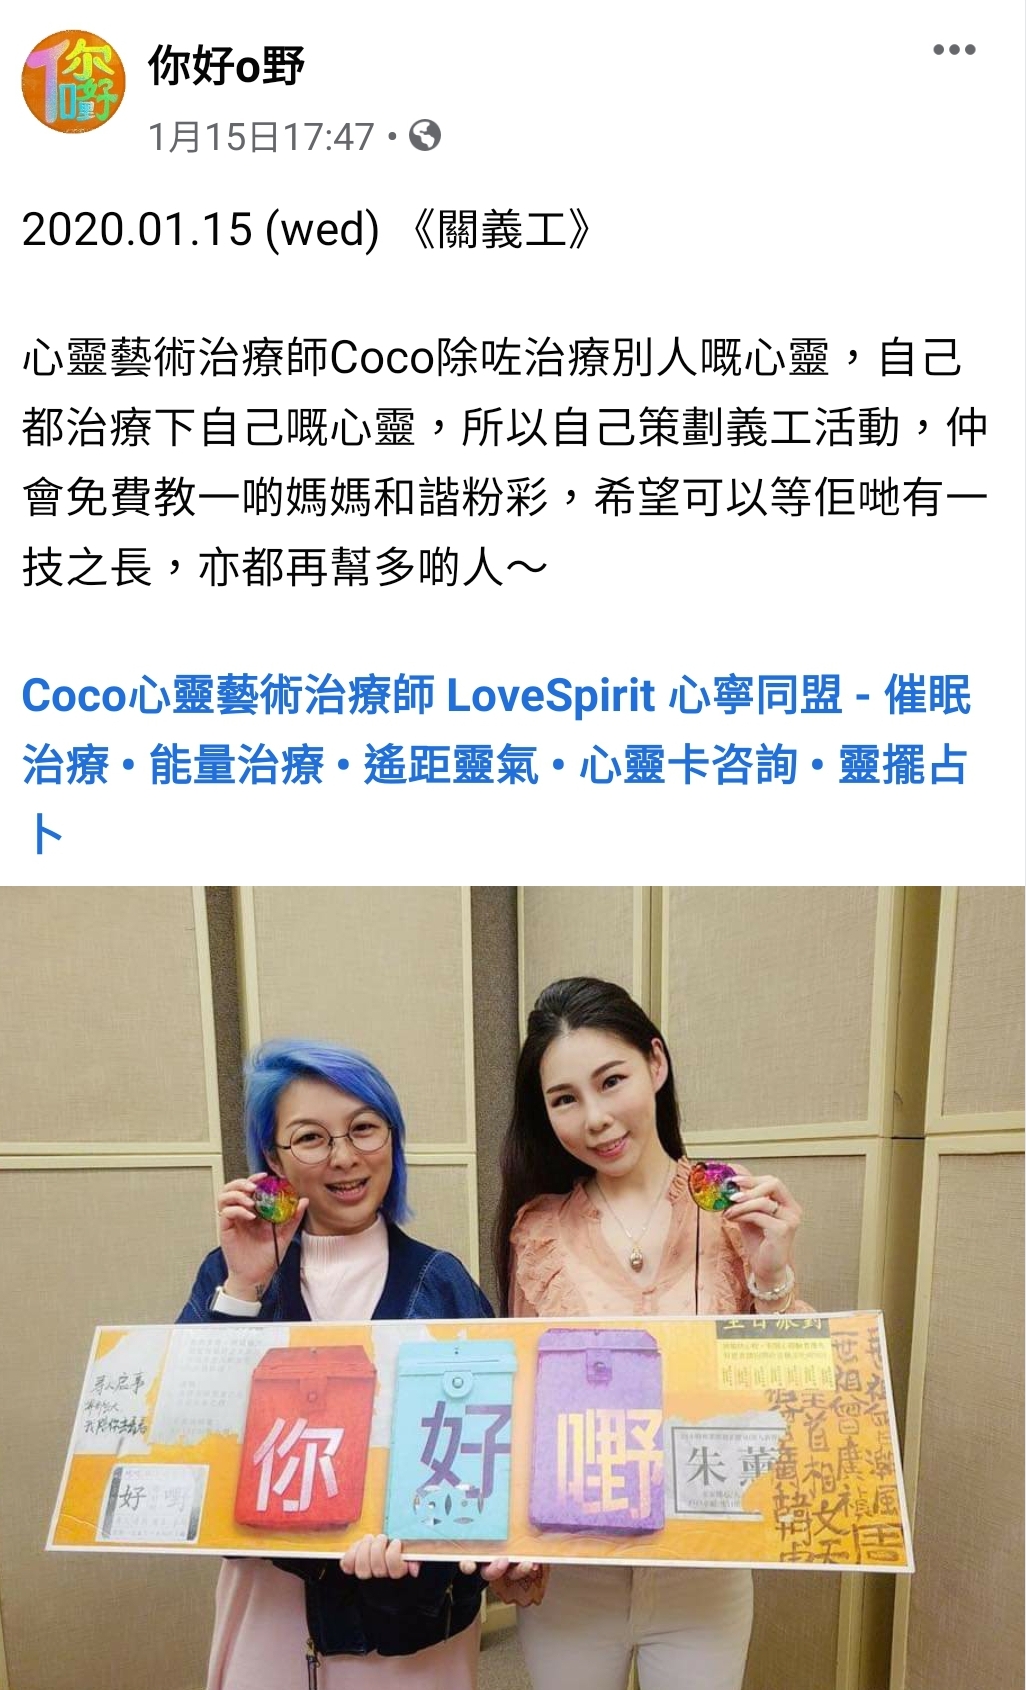 風水師媒體報導Coco • LoveSpirit : 商業電台 [[朱薰_你好嘢]] 邀請Coco安思叡心靈繪畫導師